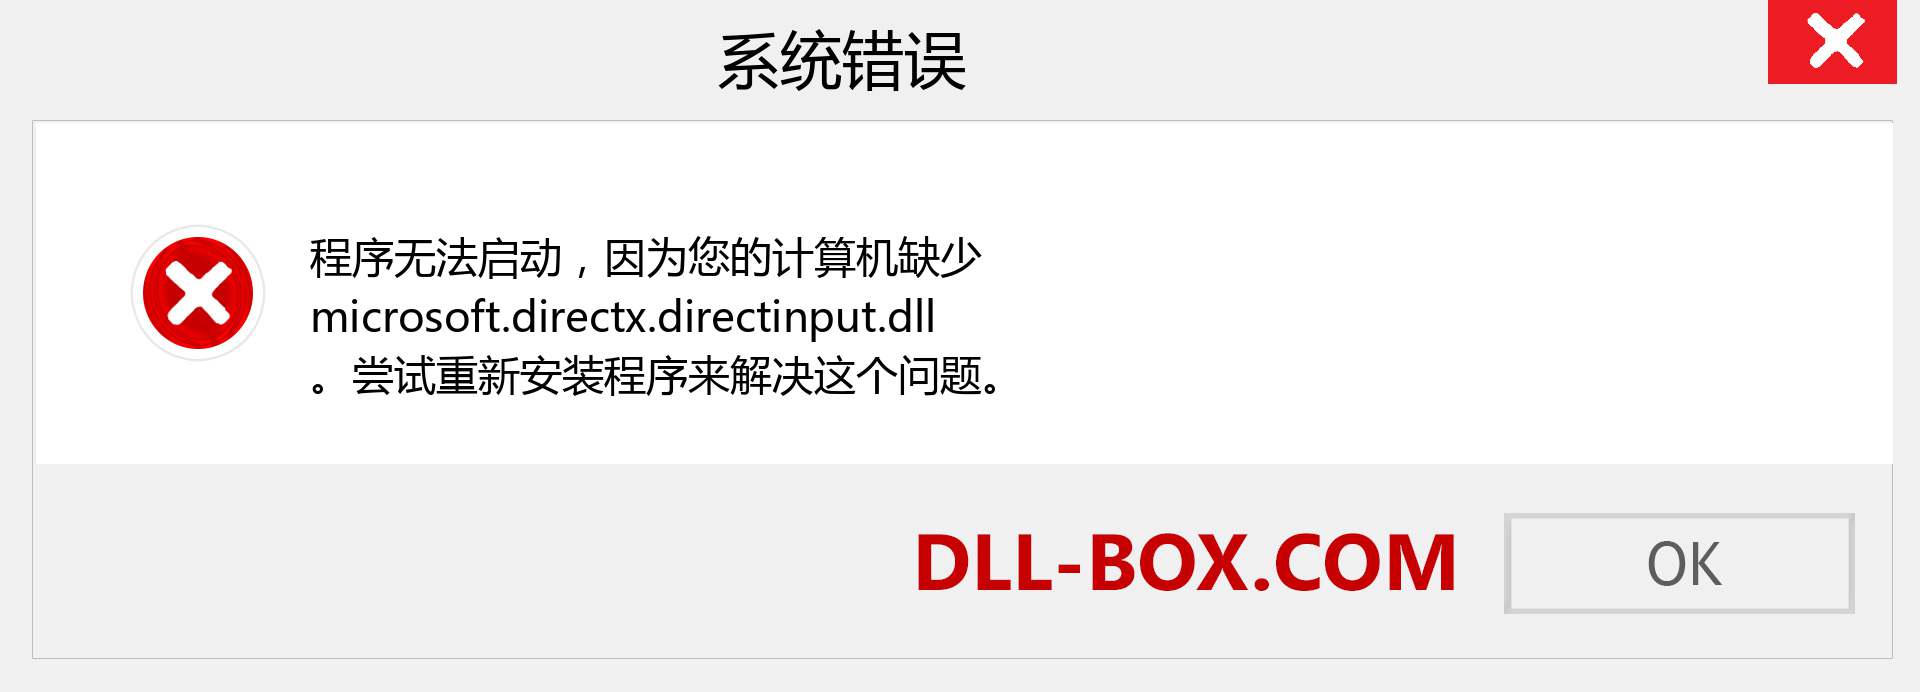 microsoft.directx.directinput.dll 文件丢失？。 适用于 Windows 7、8、10 的下载 - 修复 Windows、照片、图像上的 microsoft.directx.directinput dll 丢失错误